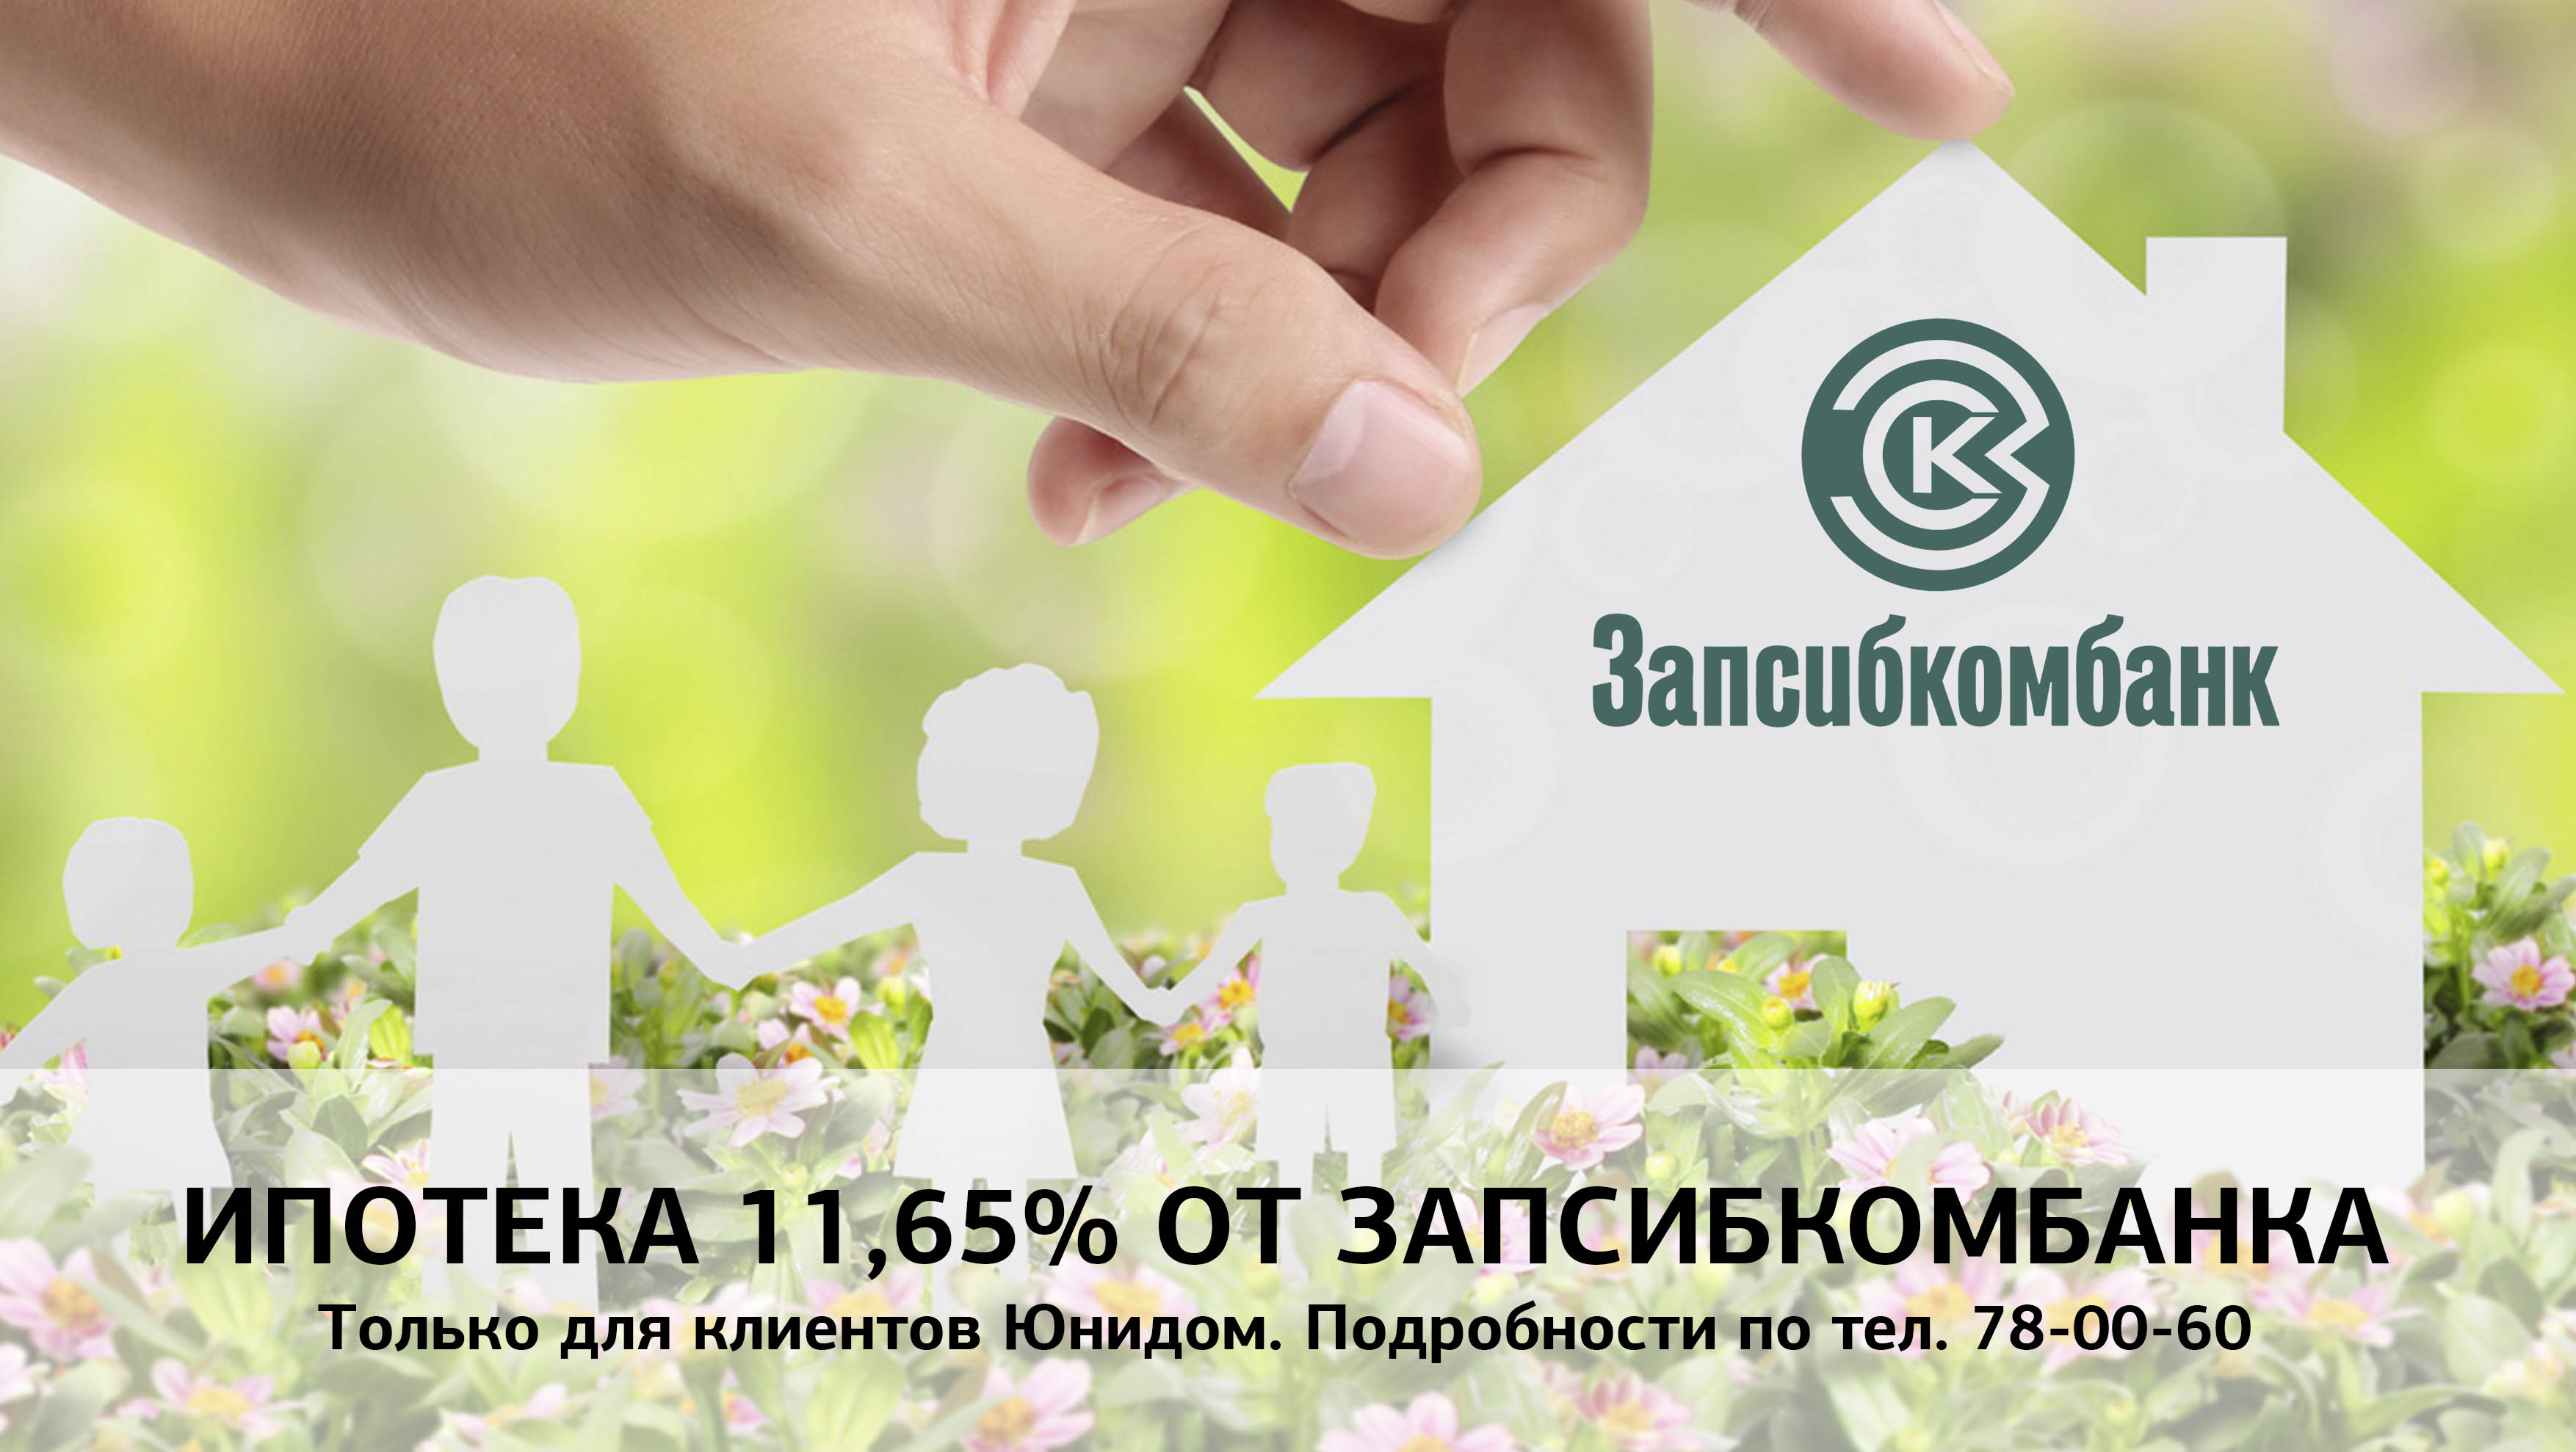 Только для клиентов АН «ЮНИДОМ» ипотека в Запсибкомбанке 11,65%